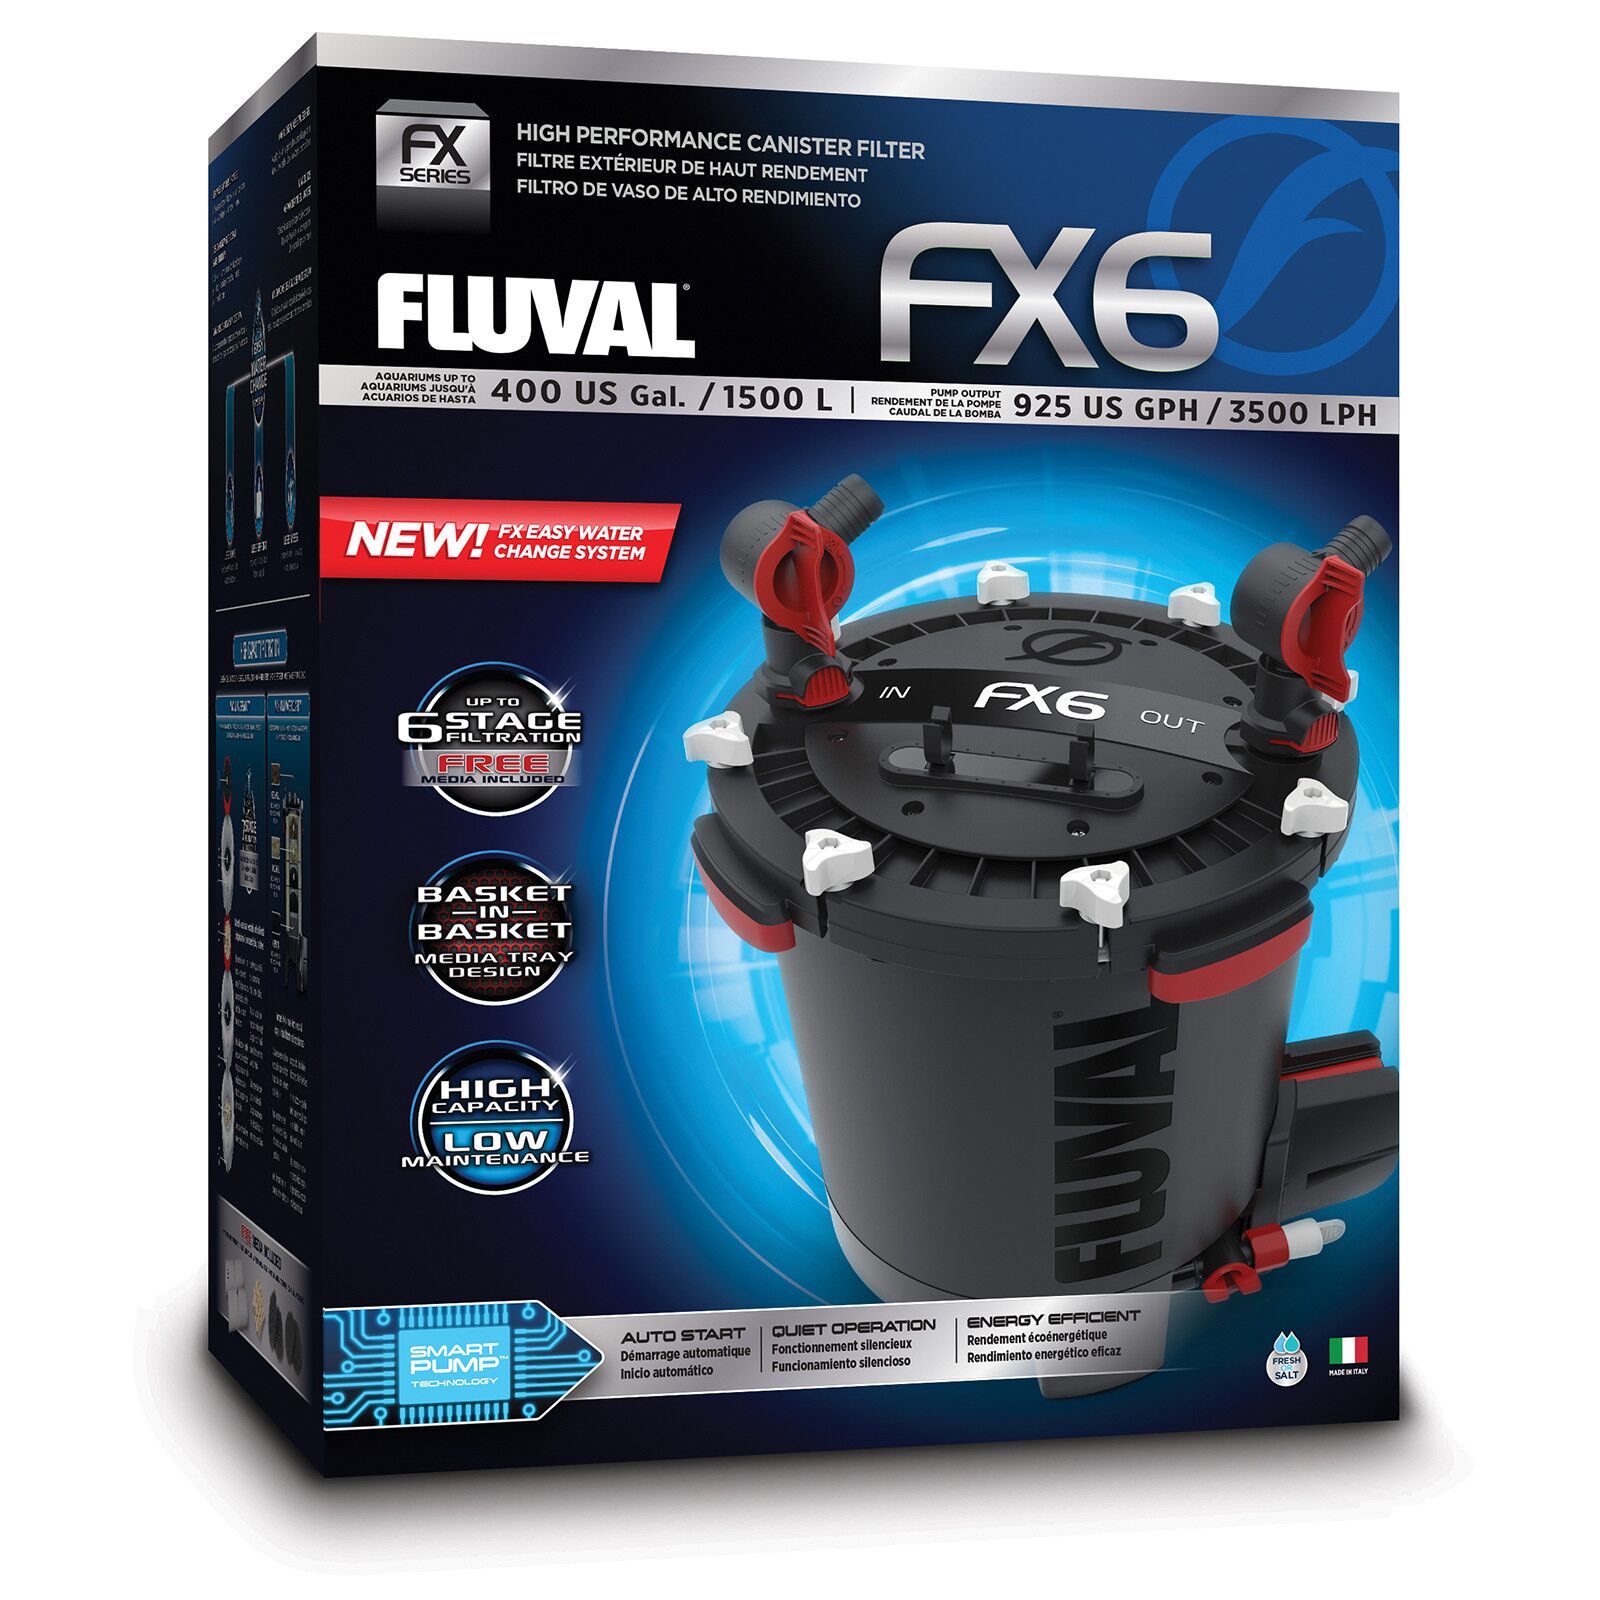 Fluval - External Filters - FX4 | Aquasabi - Shop